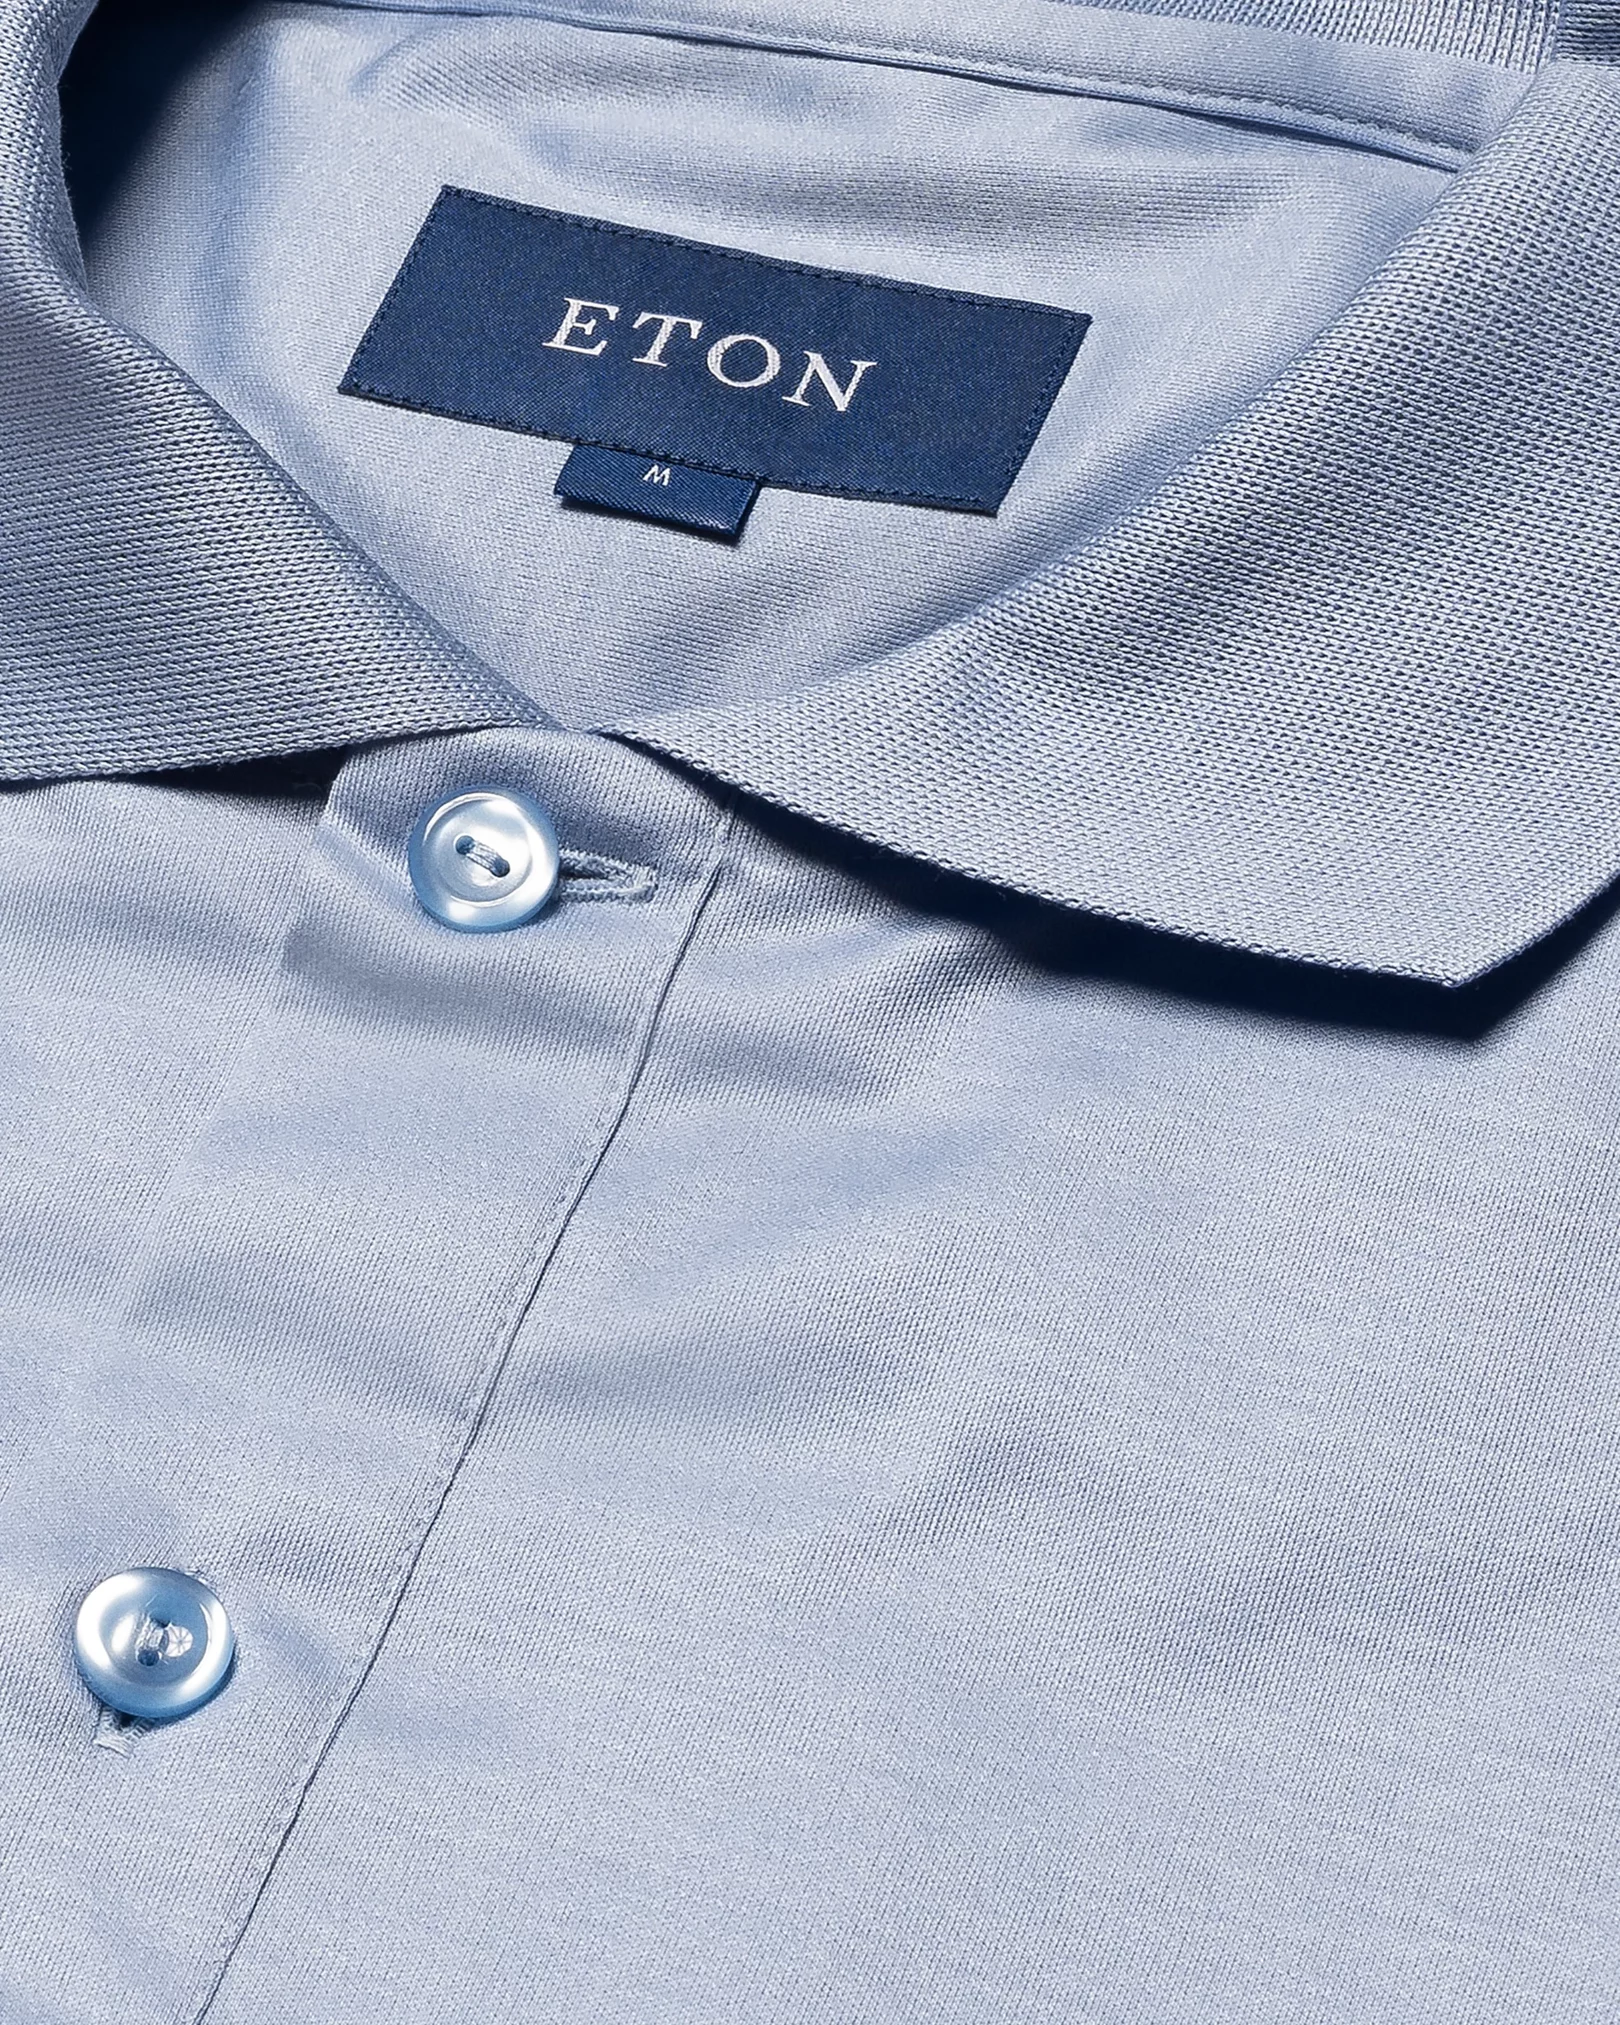 Eton - blue knitted collar short